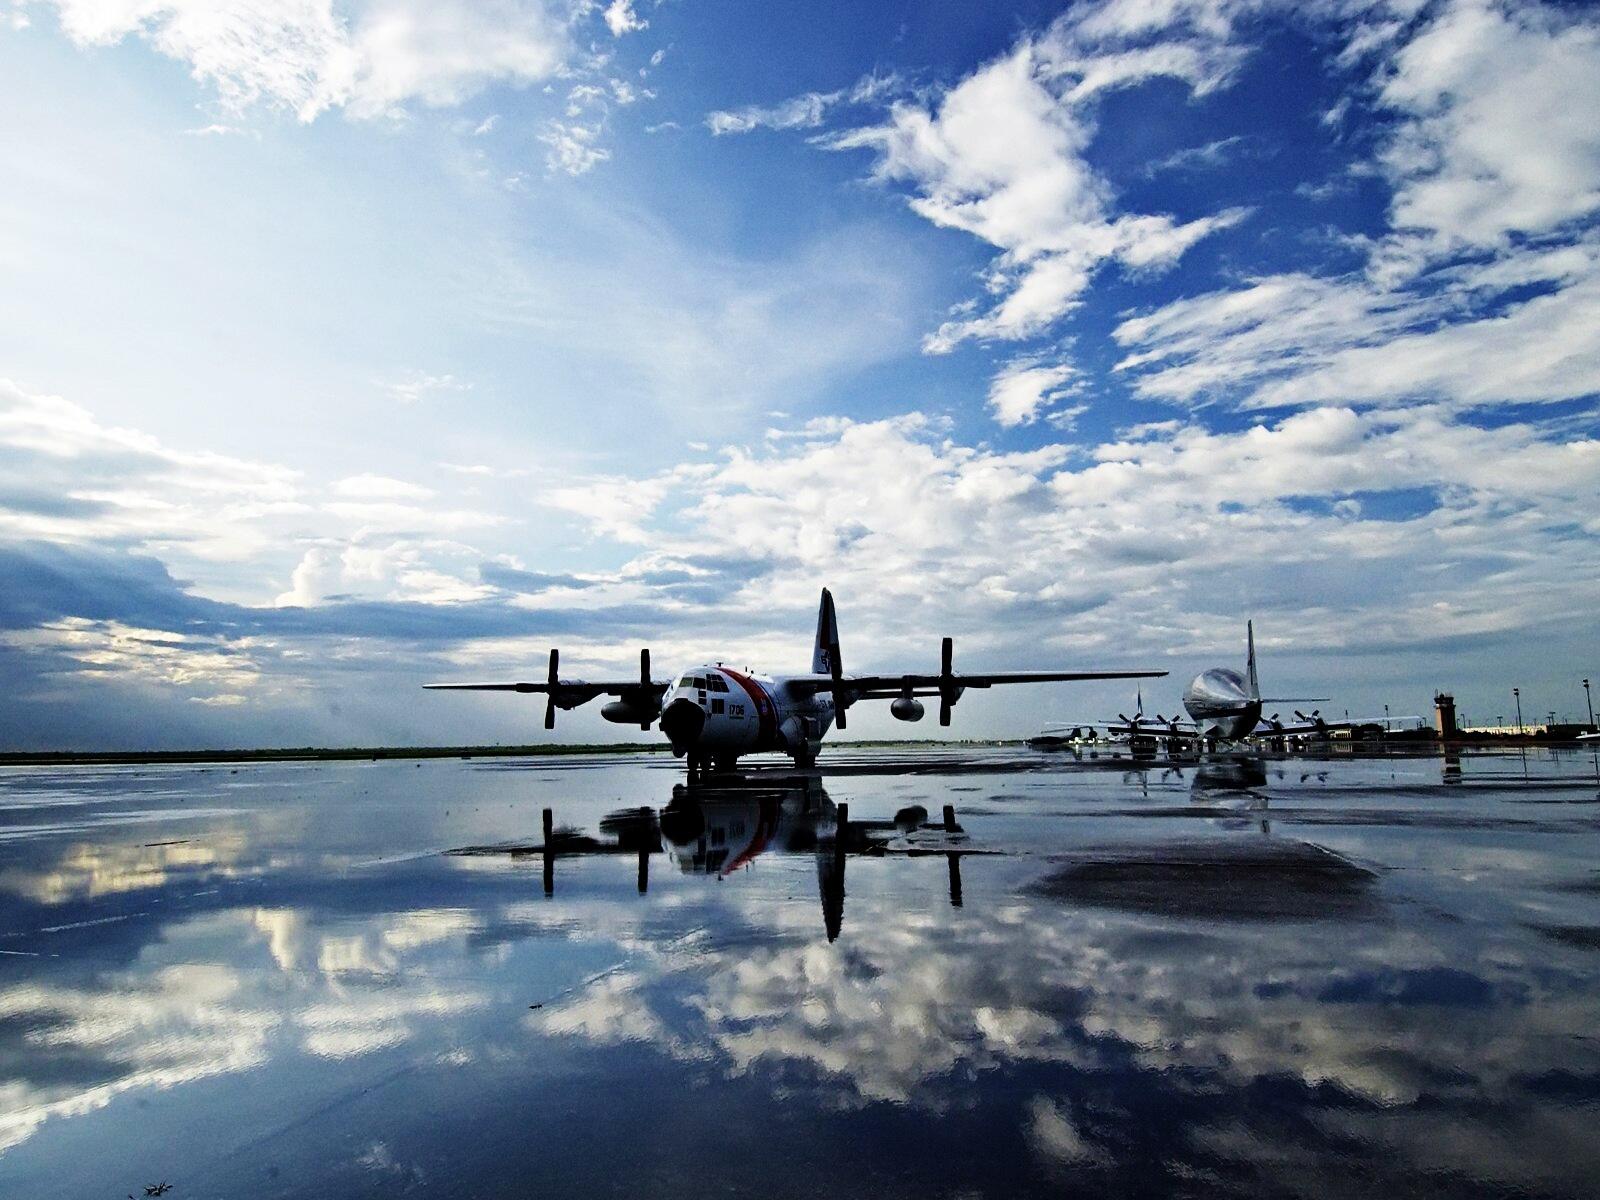 Бесплатное фото Самолеты отражаются на взлетной полосе после дождя